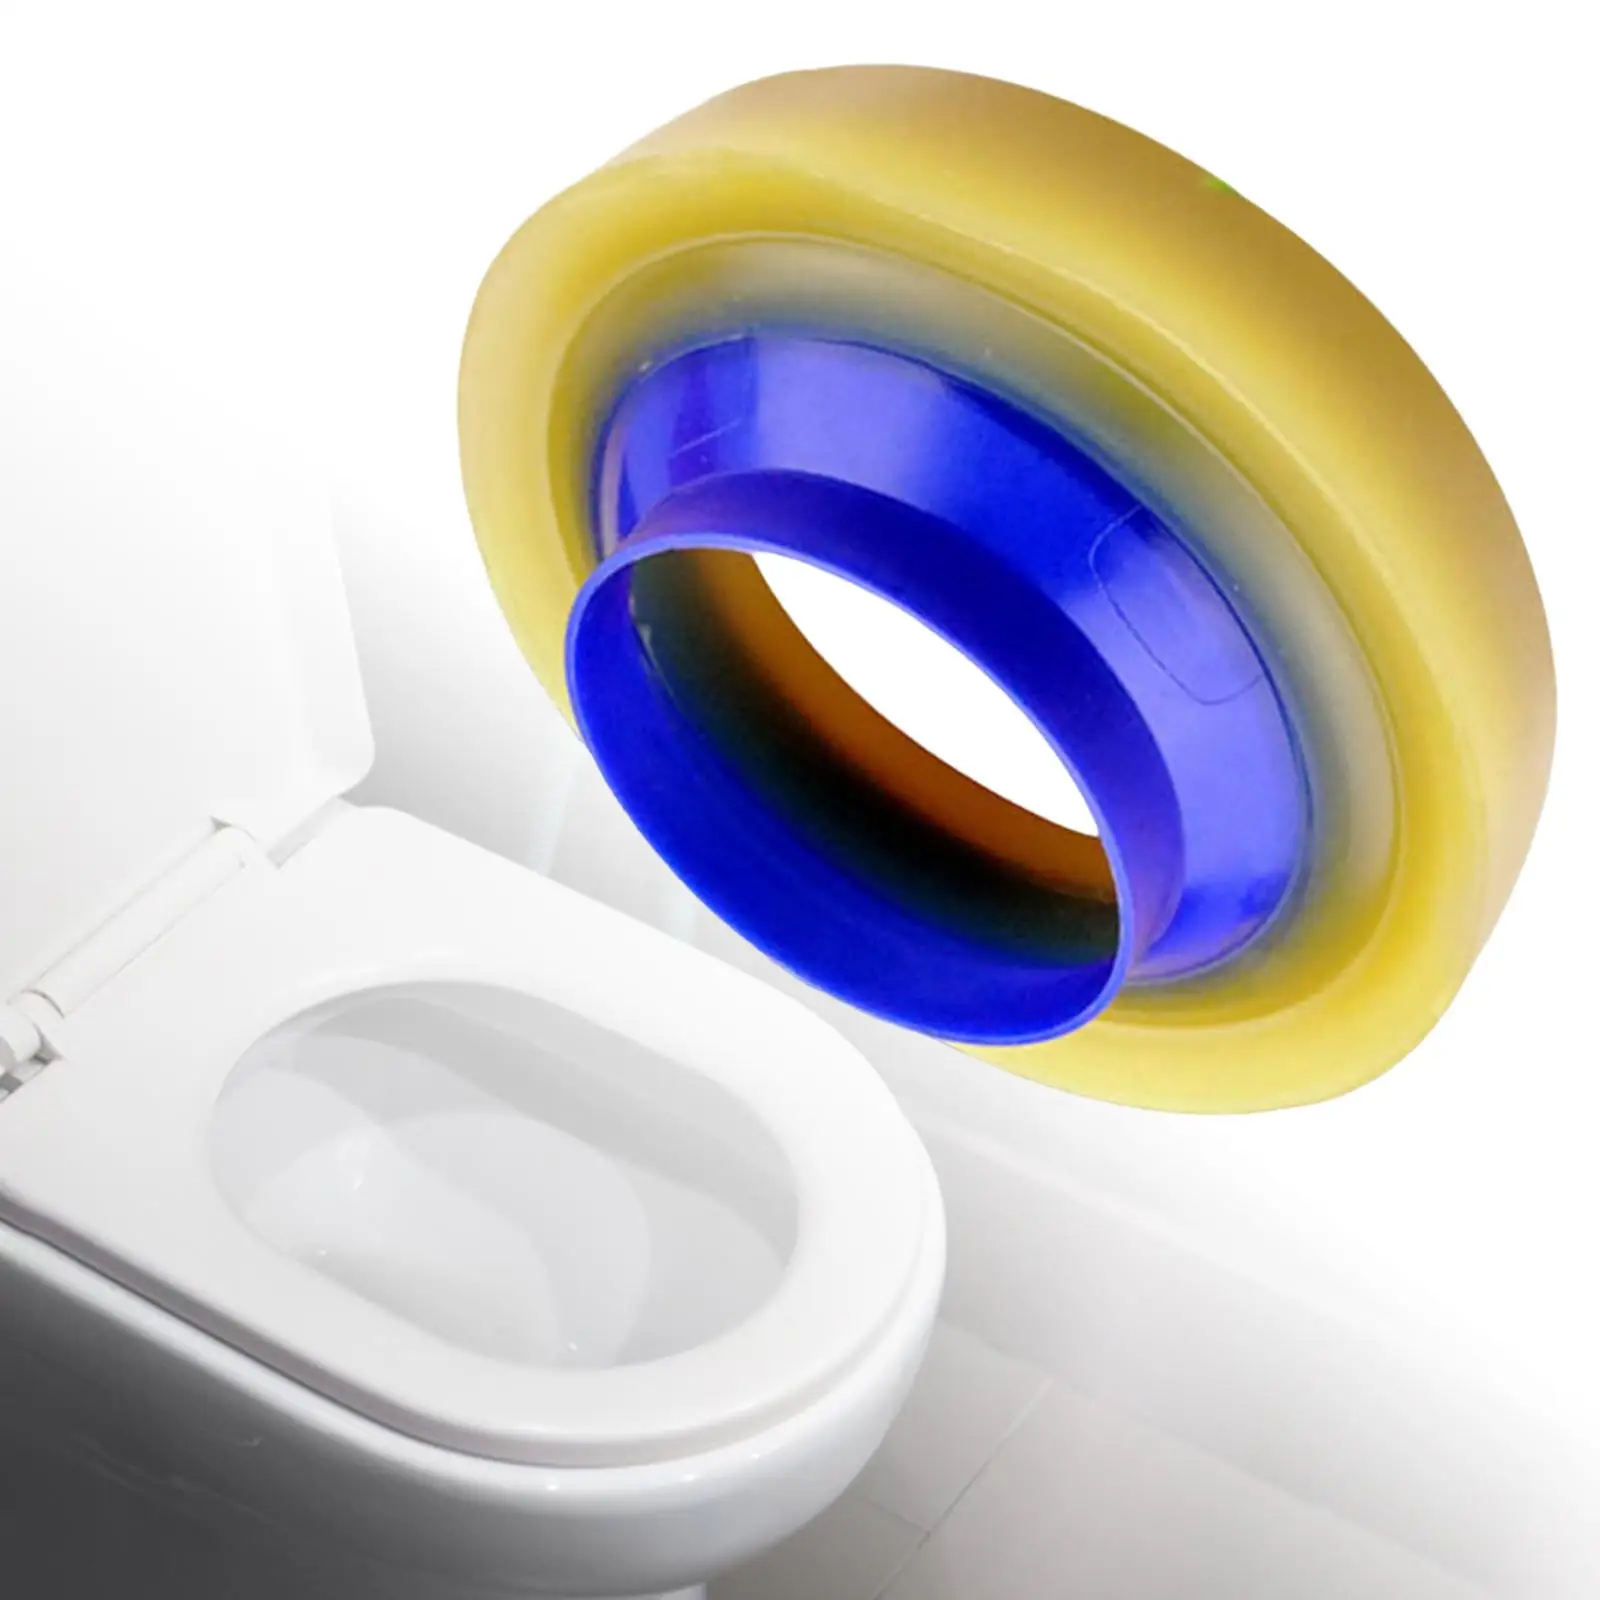 Universal Toilet Flange Sealing loop Easy Install Thickened Flange Replacement Bowl Gasket Drain Pipe Toilet loop Repair Kits